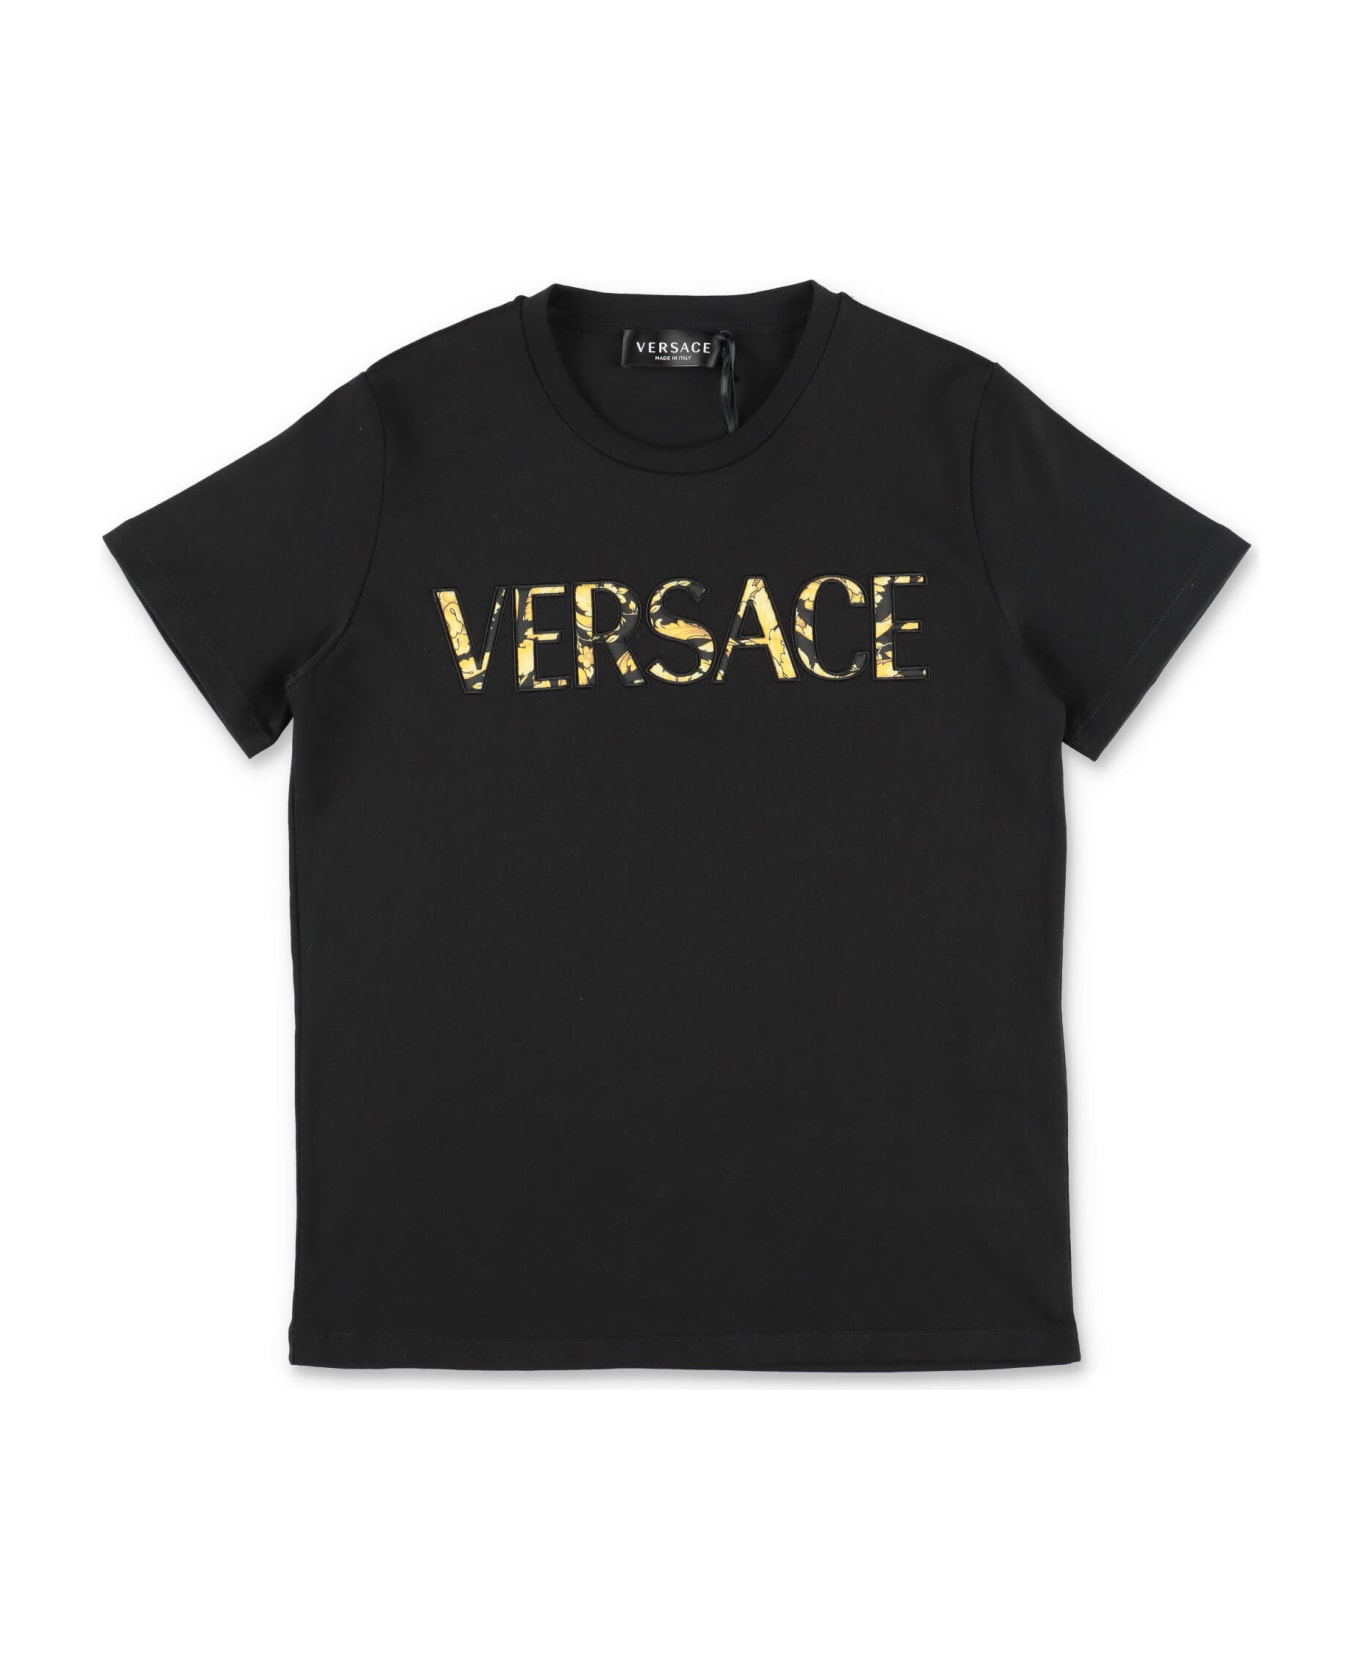 Versace T-shirt Bianca In Jersey Di Cotone Bambino - Bianco